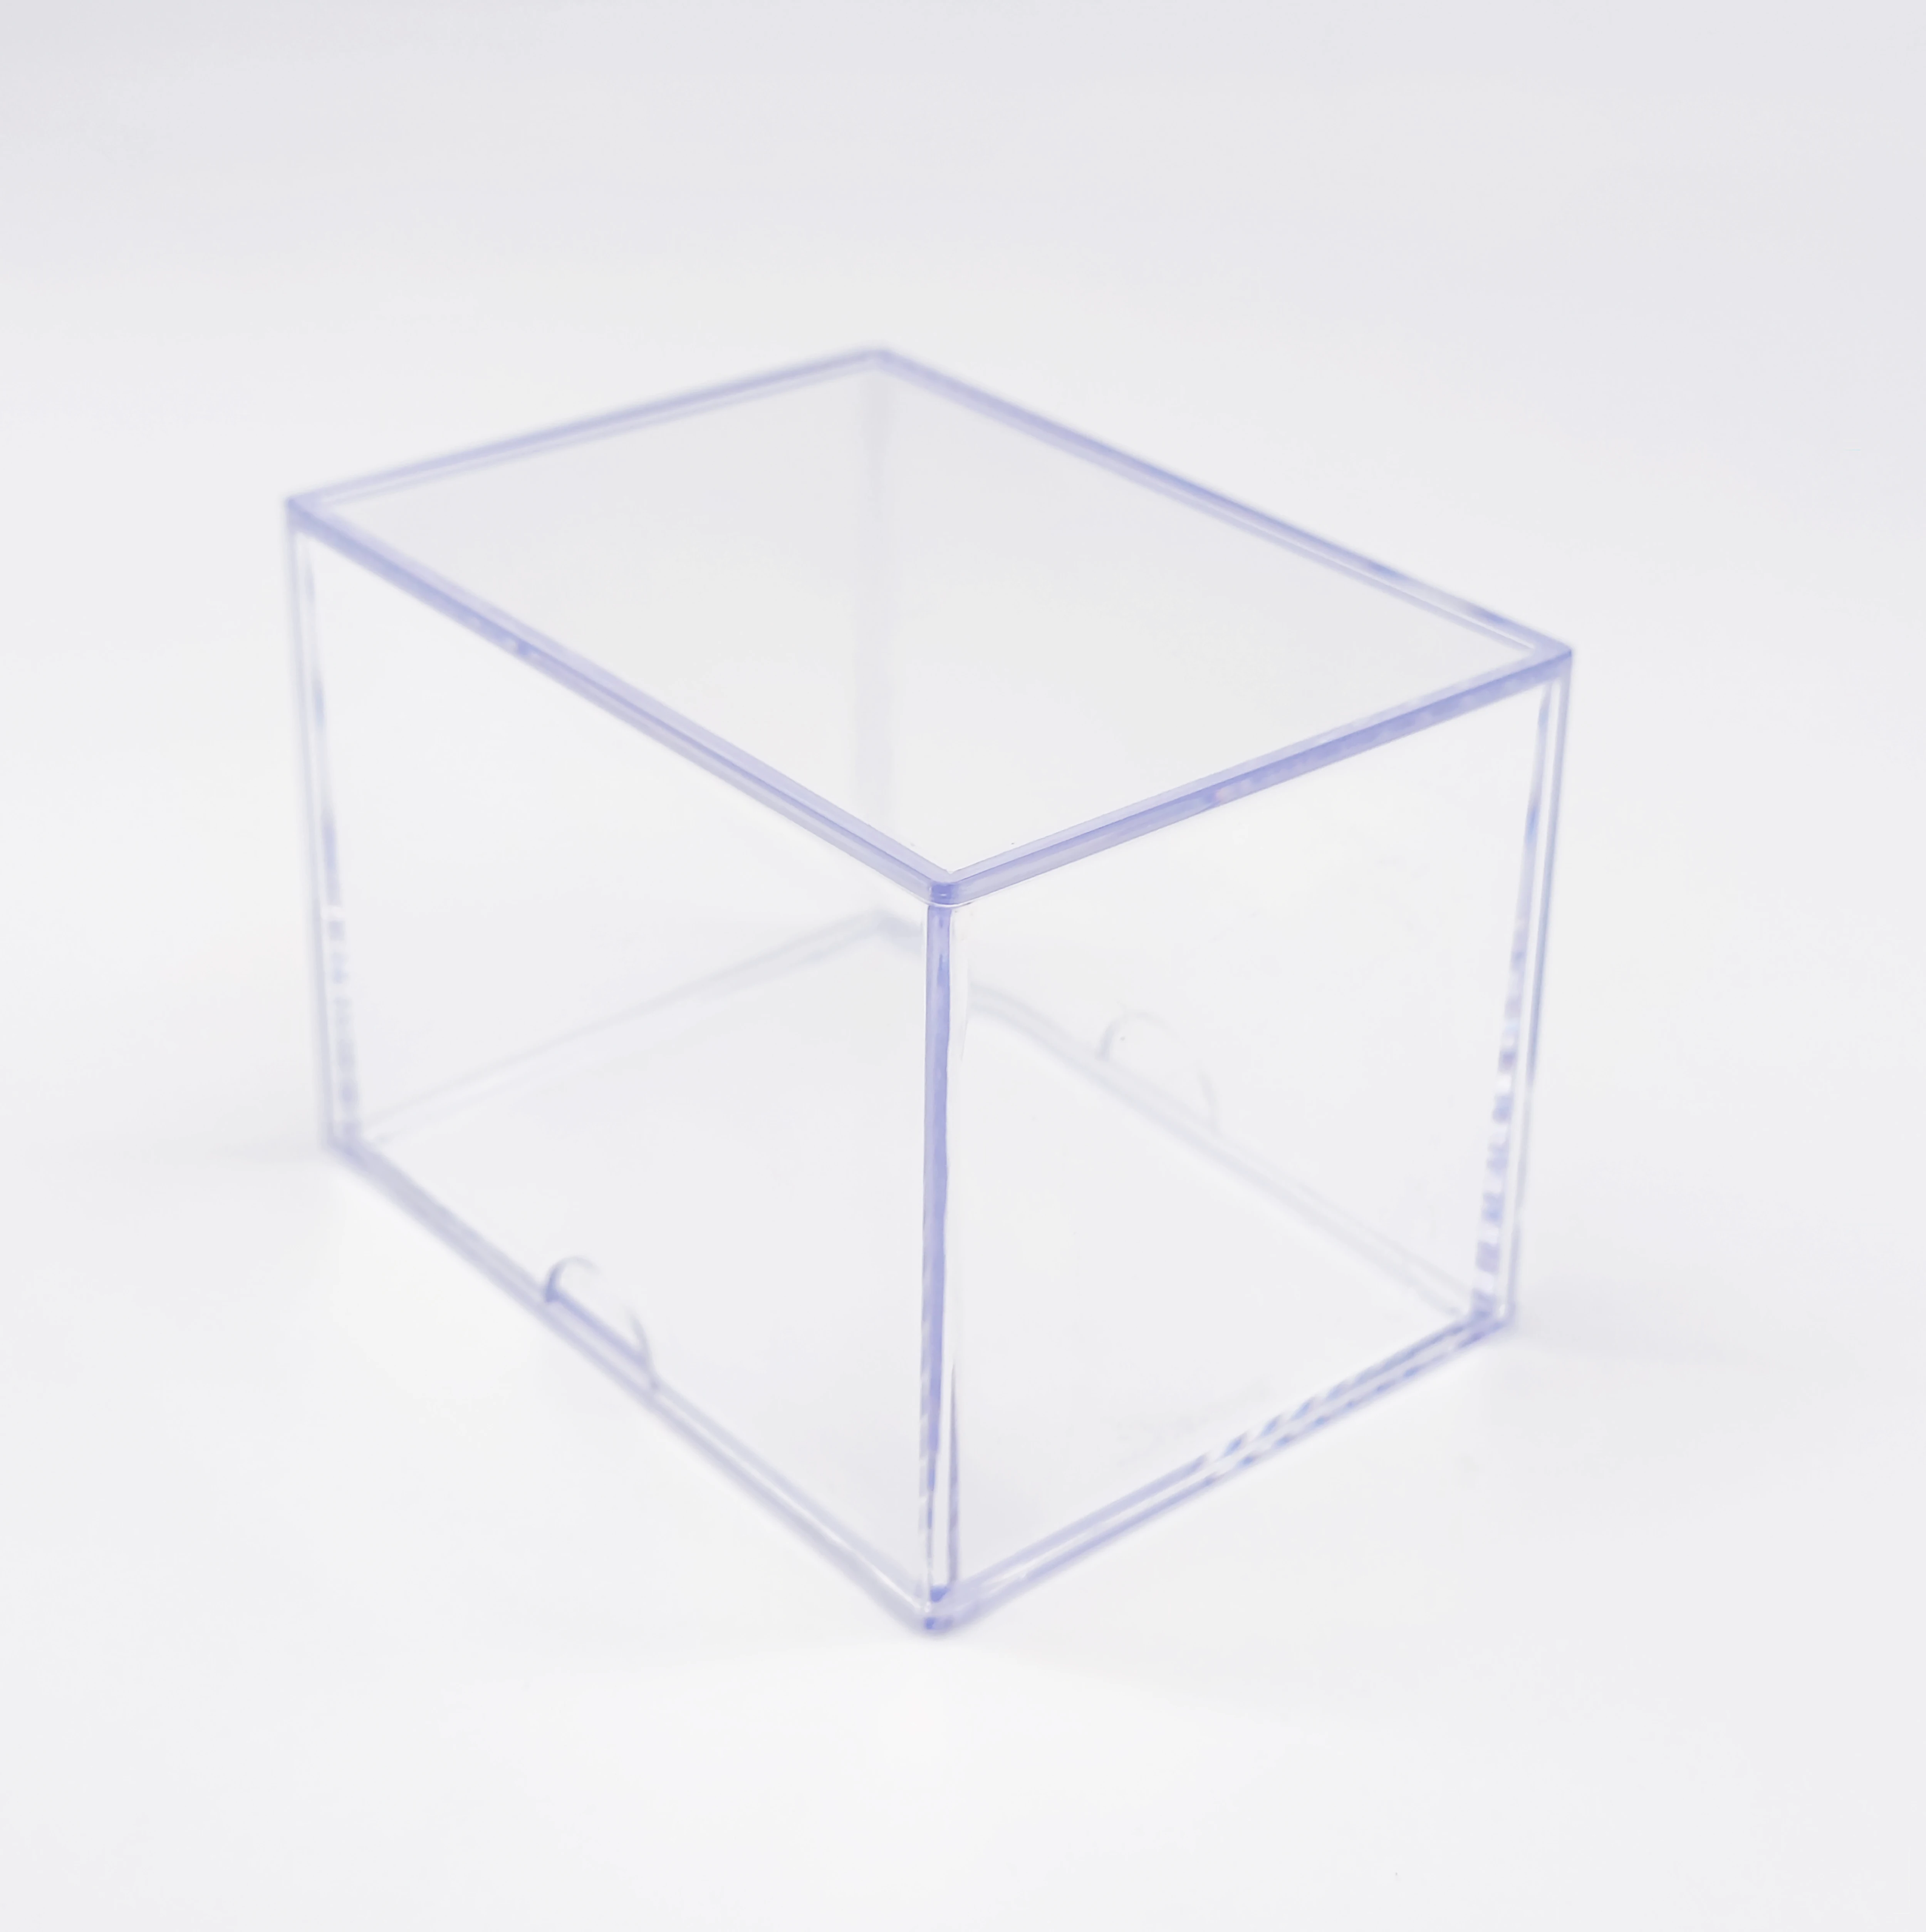 2 шт. ползунок коробка 150 шт. коробка для хранения прозрачный кейс для Карт Коробка для отображения